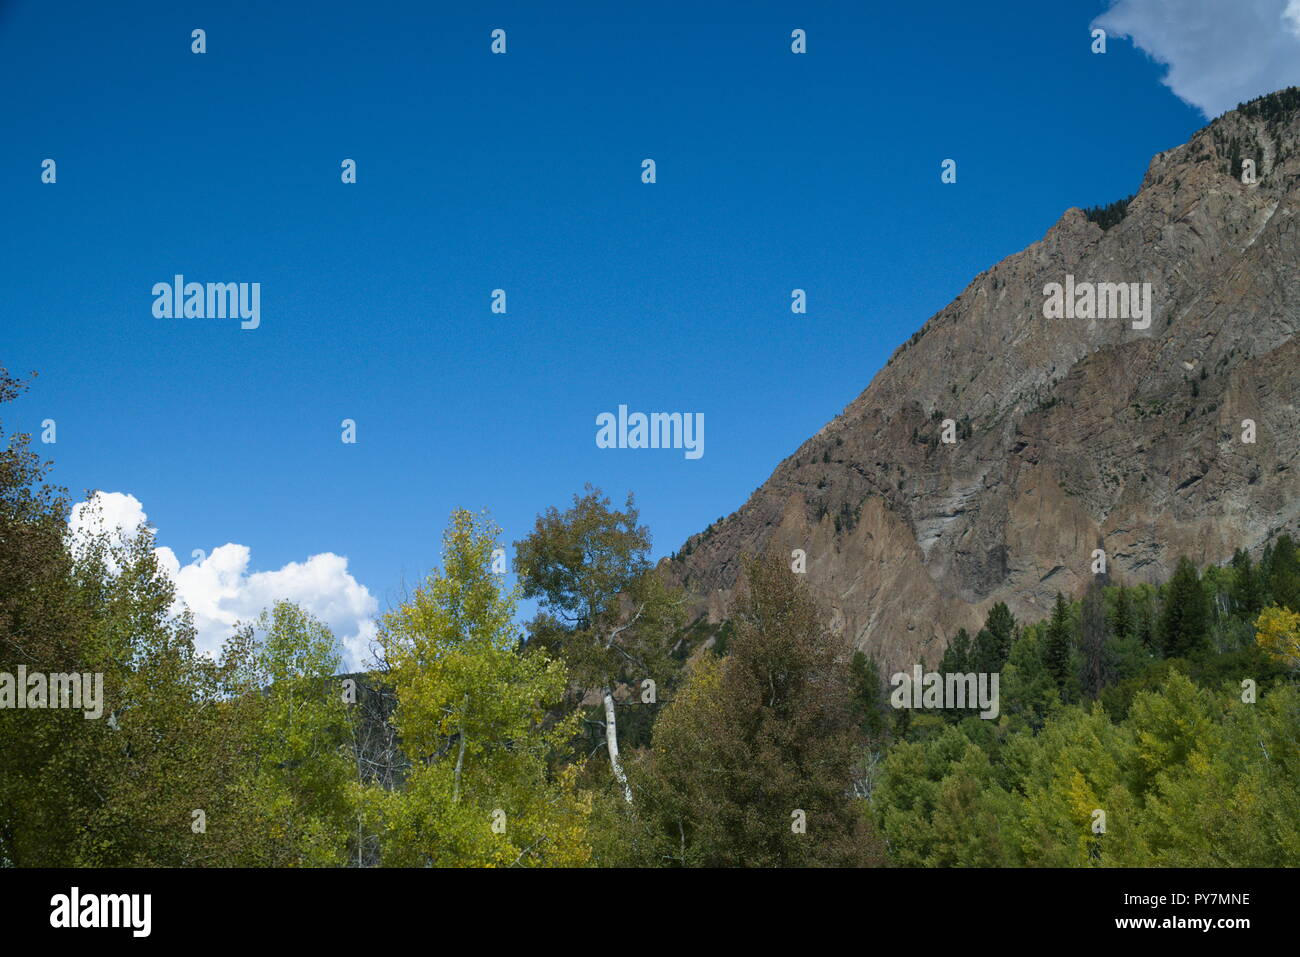 Una montagna e alberi. Il cielo blu con nuvole e abbondanza di vegetazione. Foto Stock